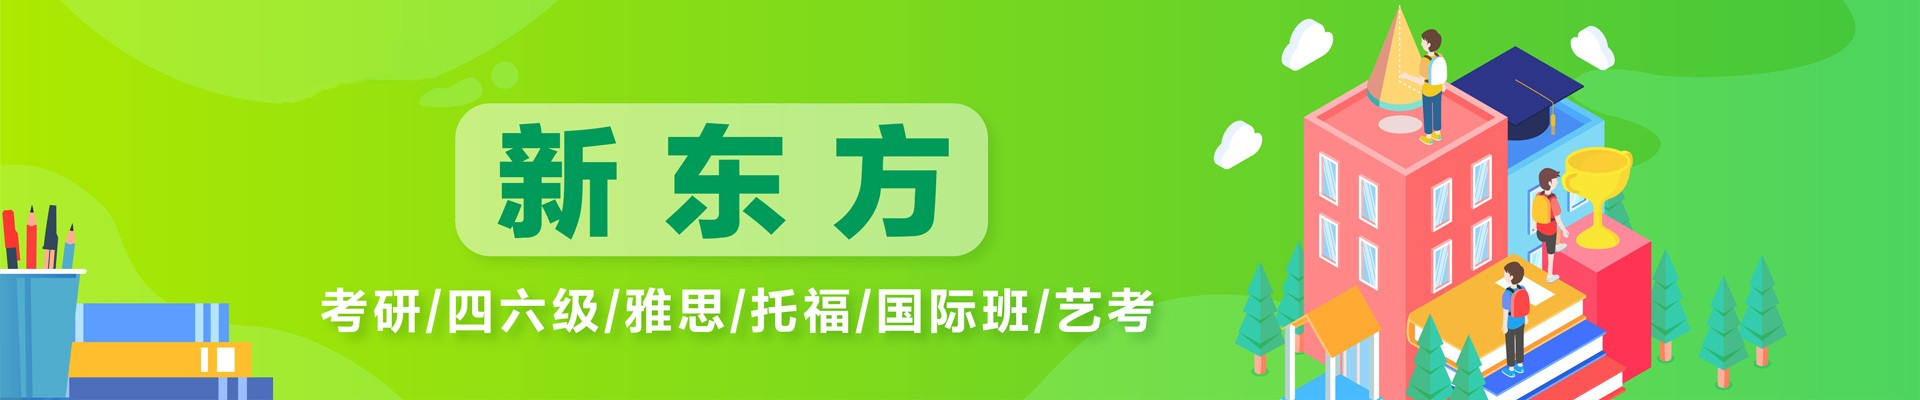 广州托福TOEFL培训大学生初级限8人